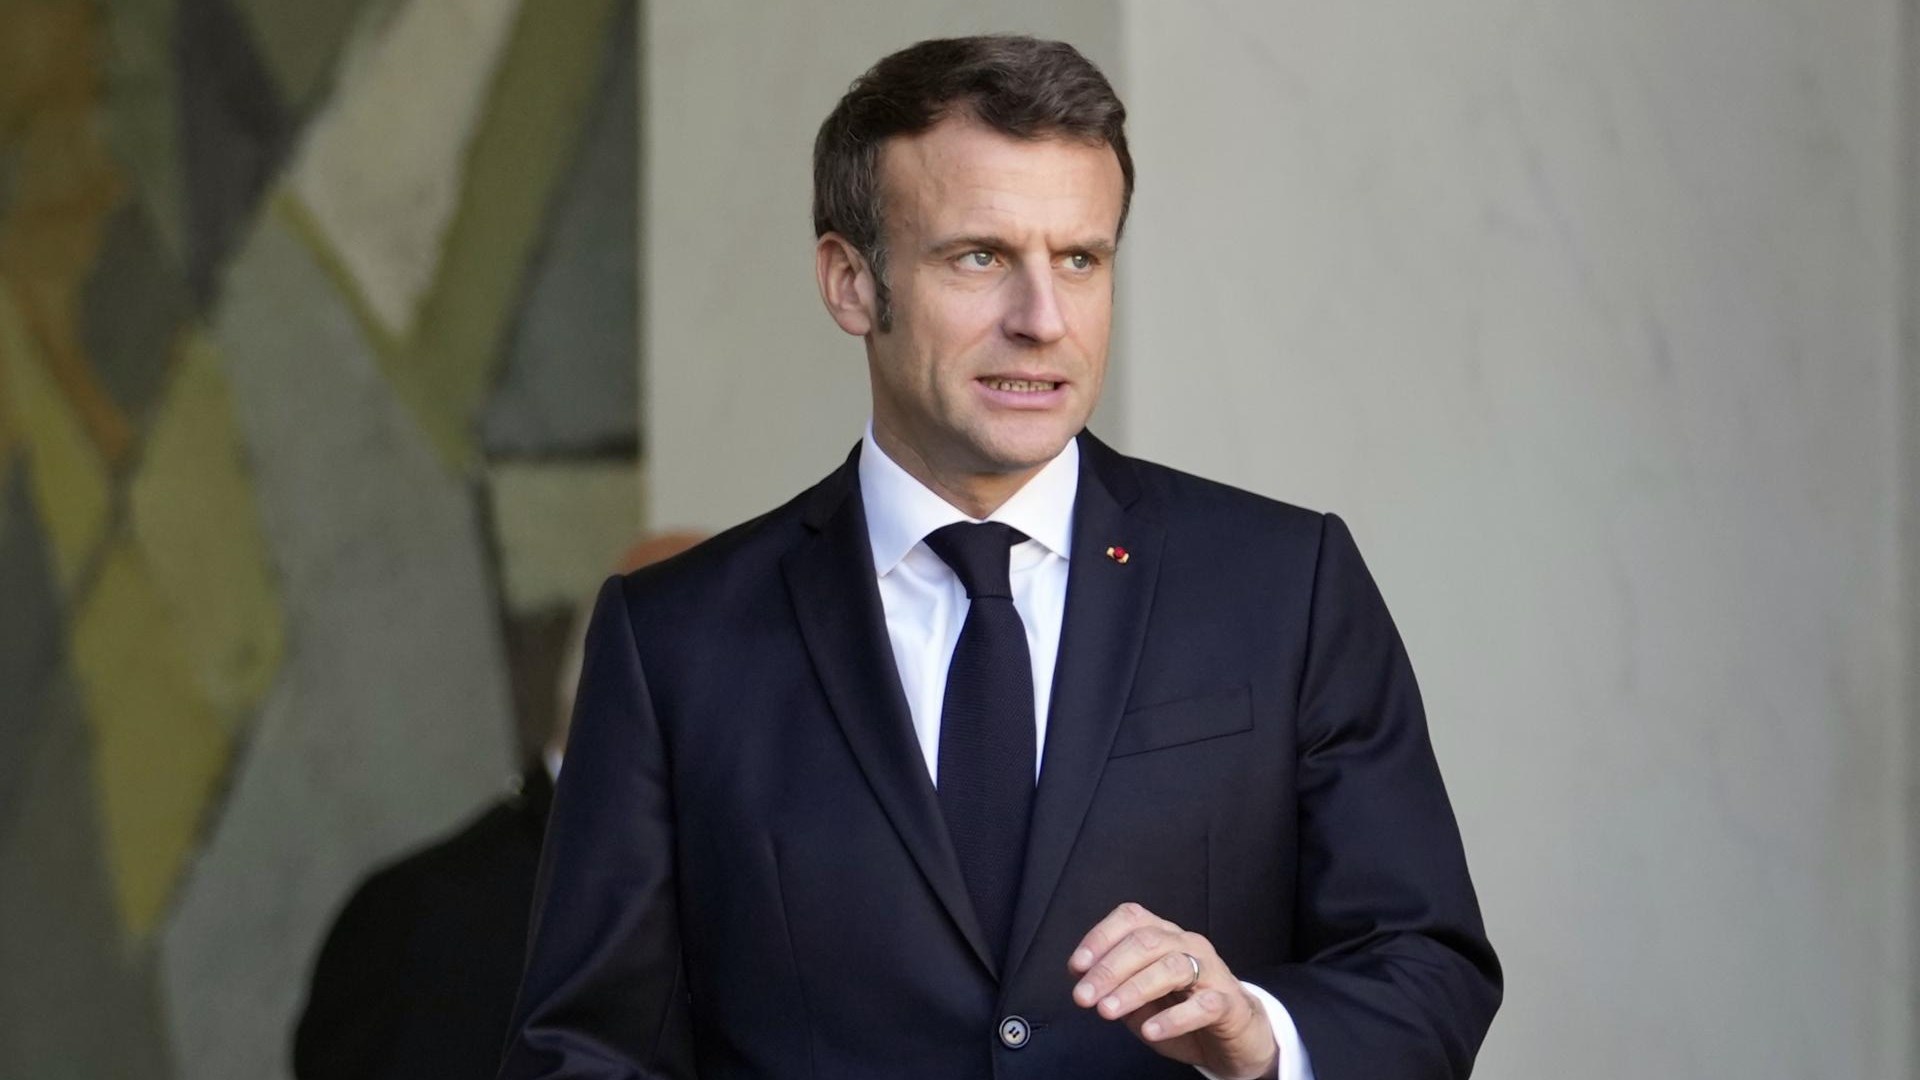 La justice française enquête sur le financement de la campagne électorale de Macron